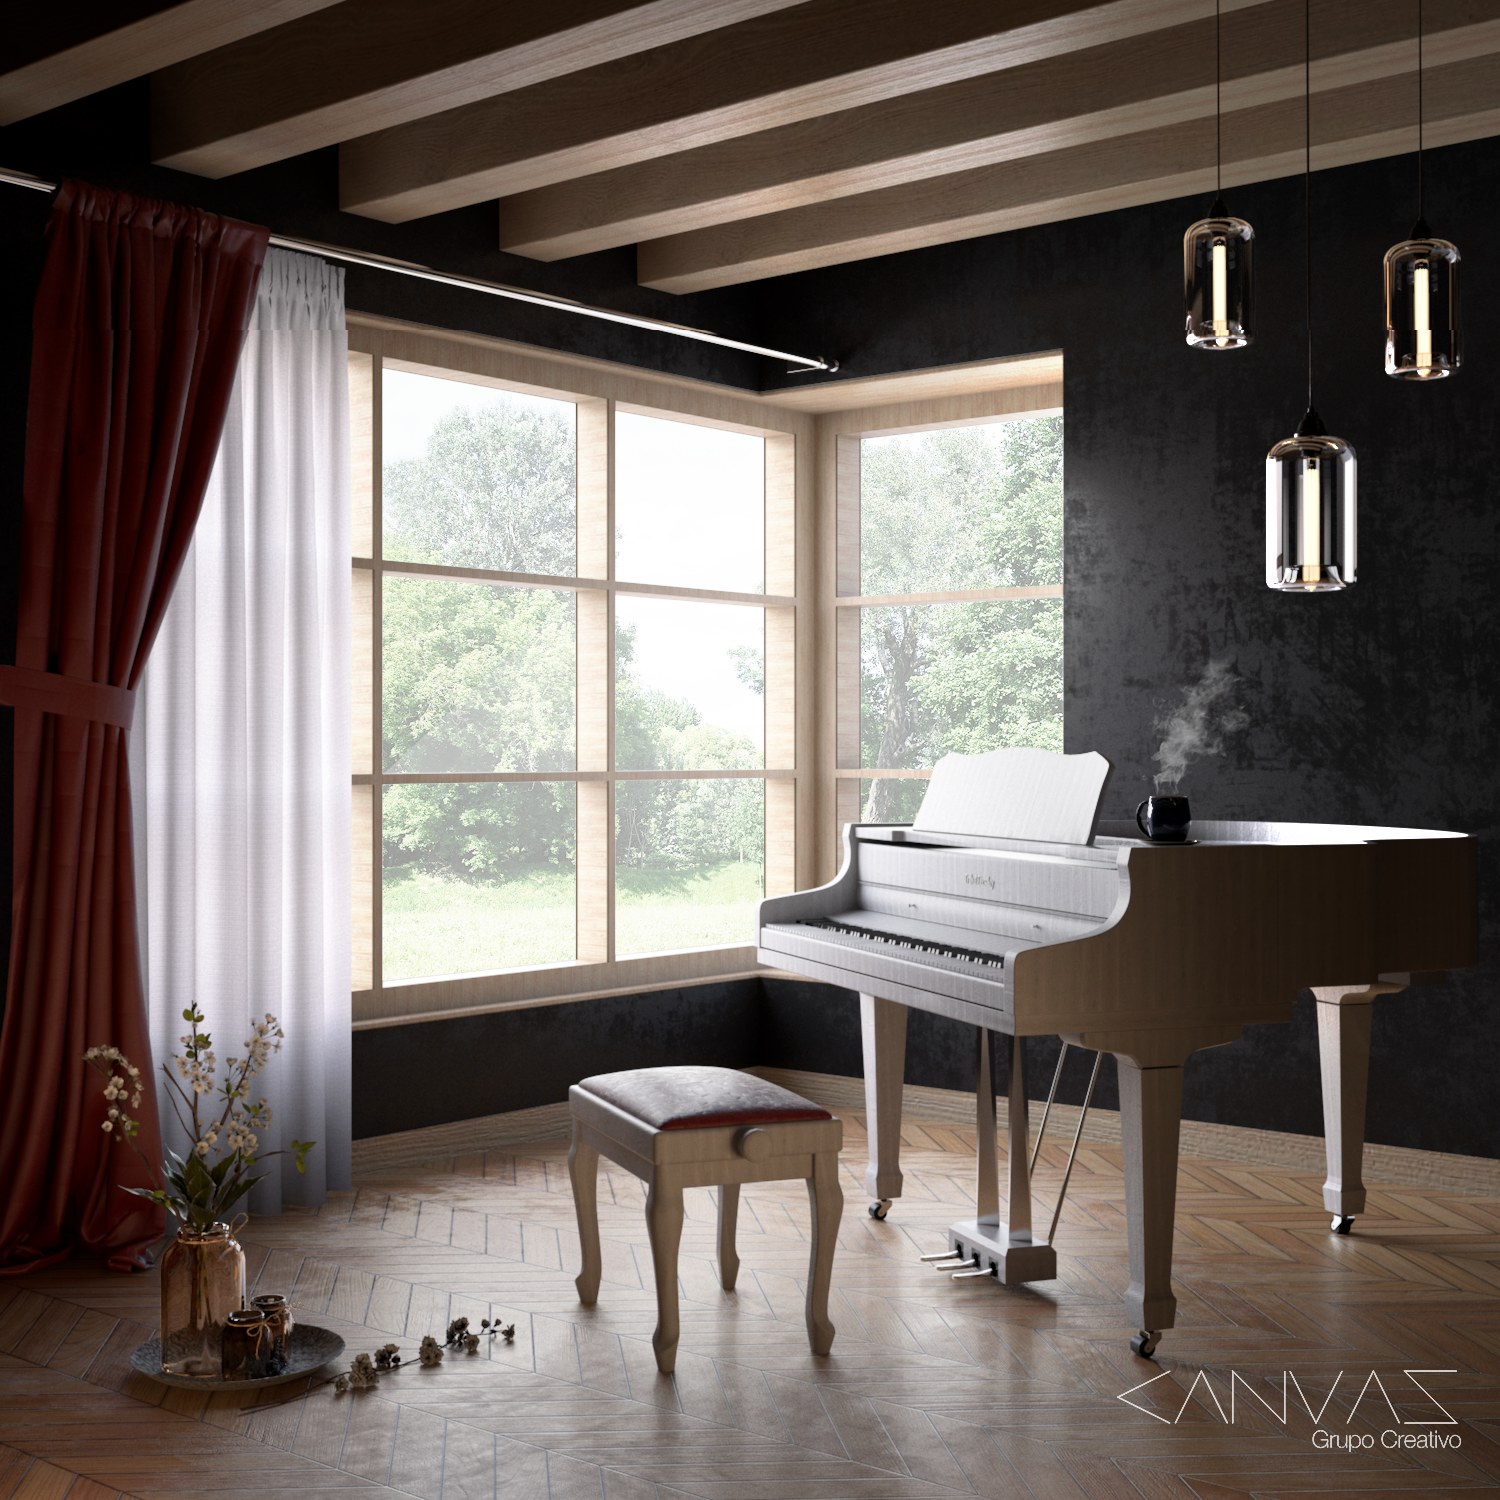 Piano Corner - vray render by ALEJANDRO GARCIA